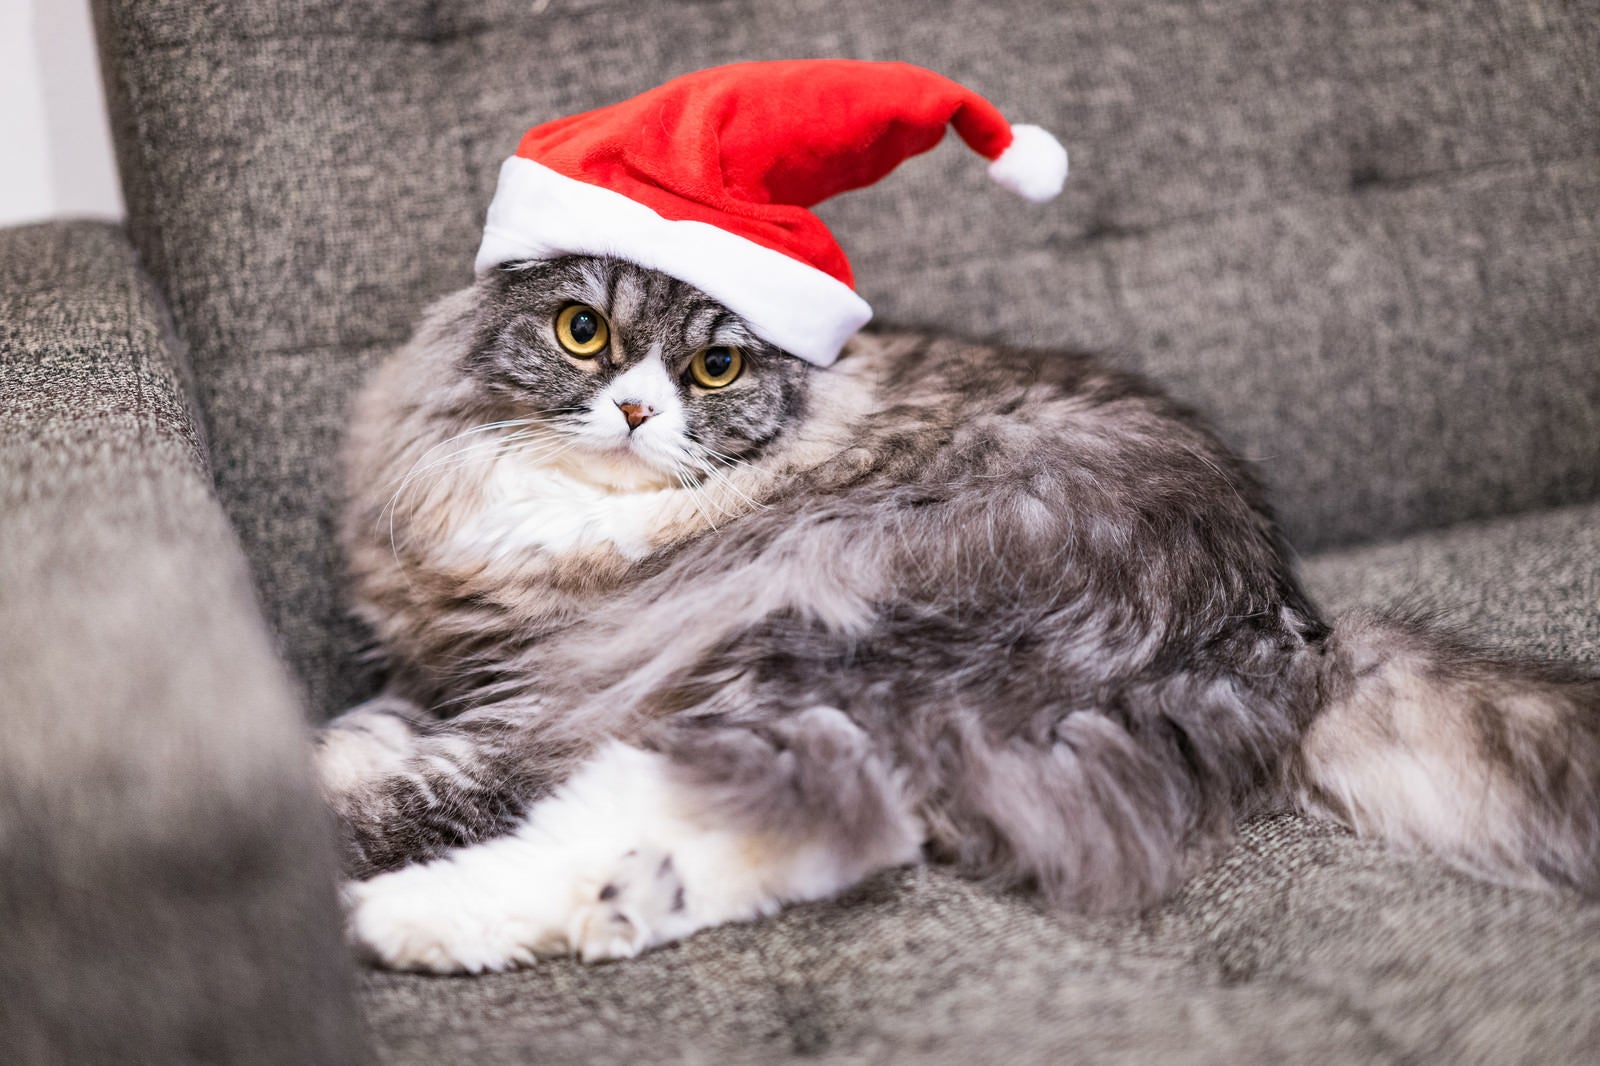 「サンタ帽をかぶった猫」の写真